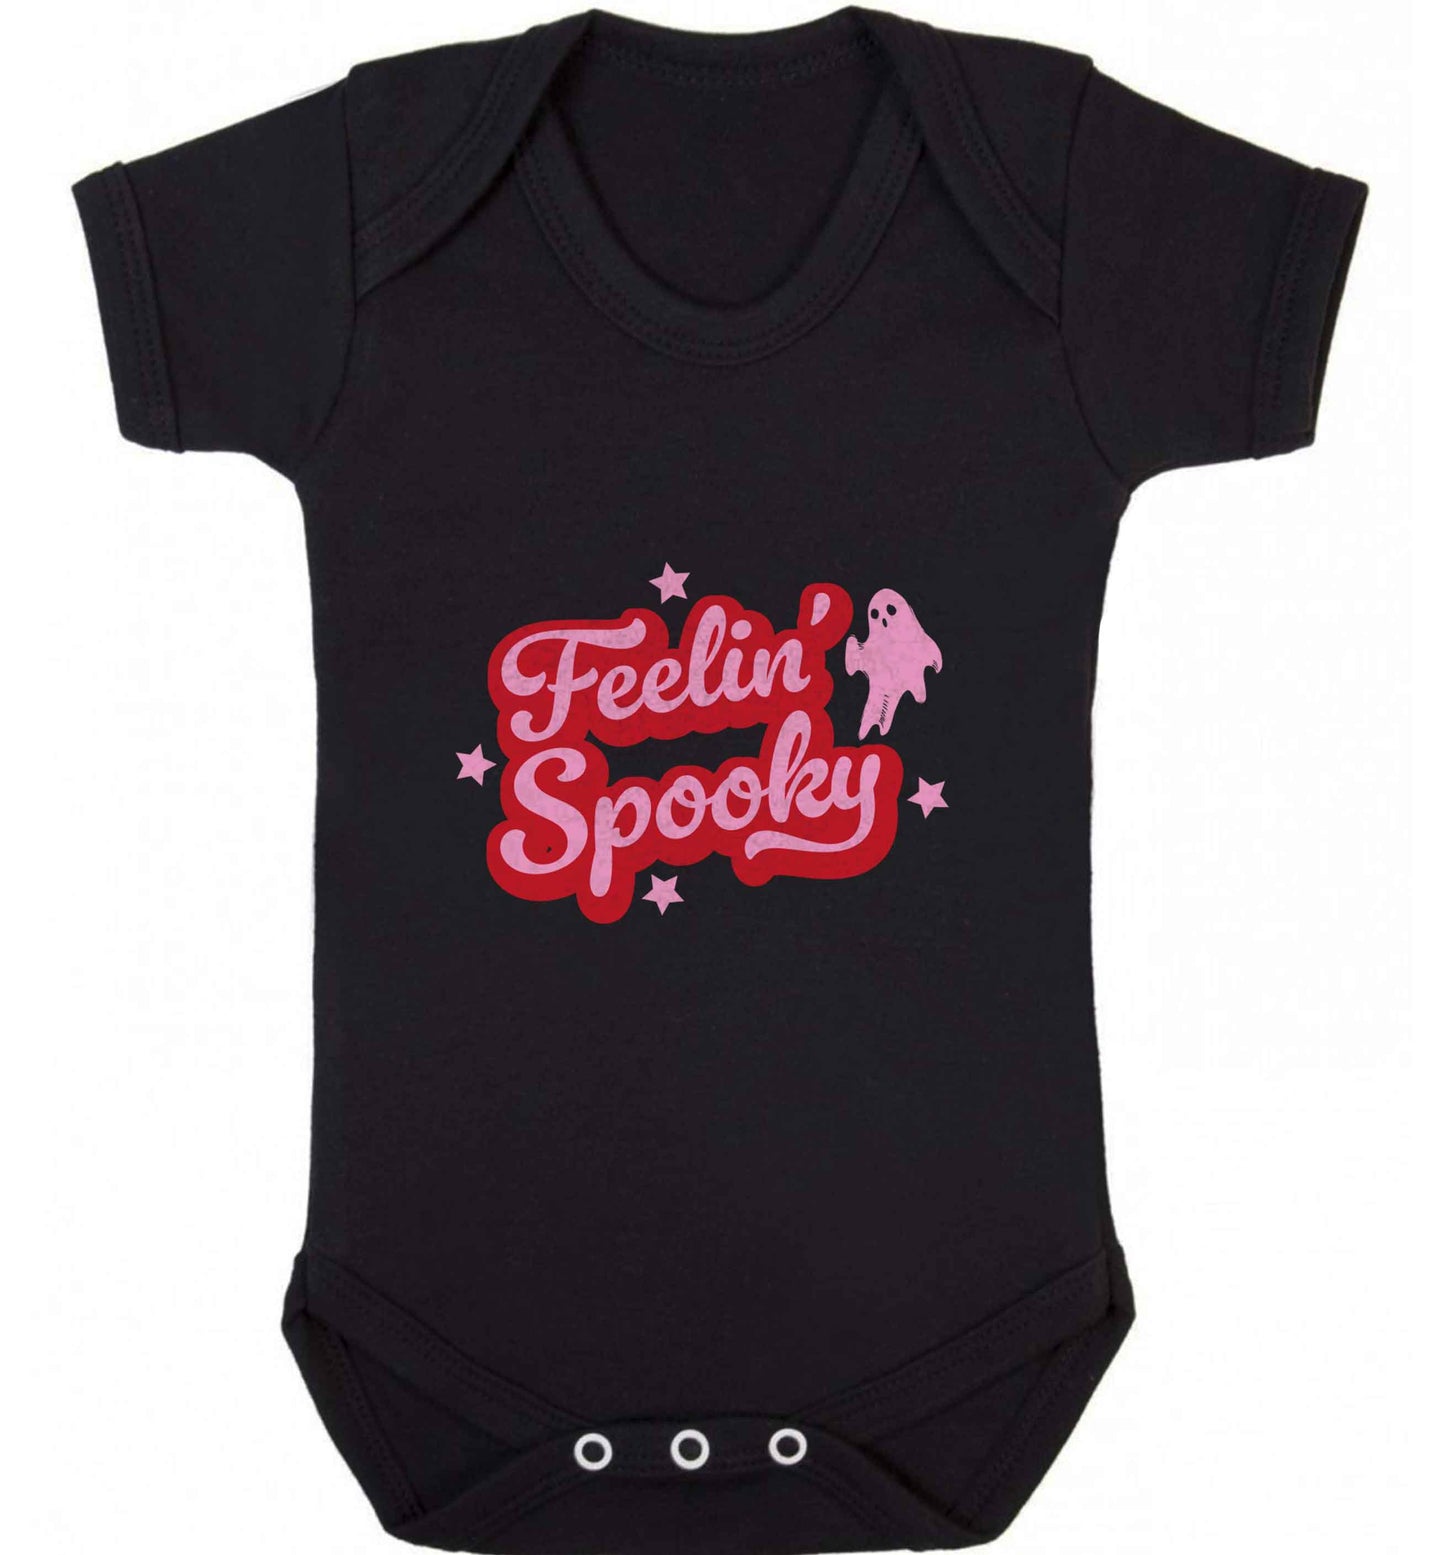 Feelin' Spooky Kit baby vest black 18-24 months